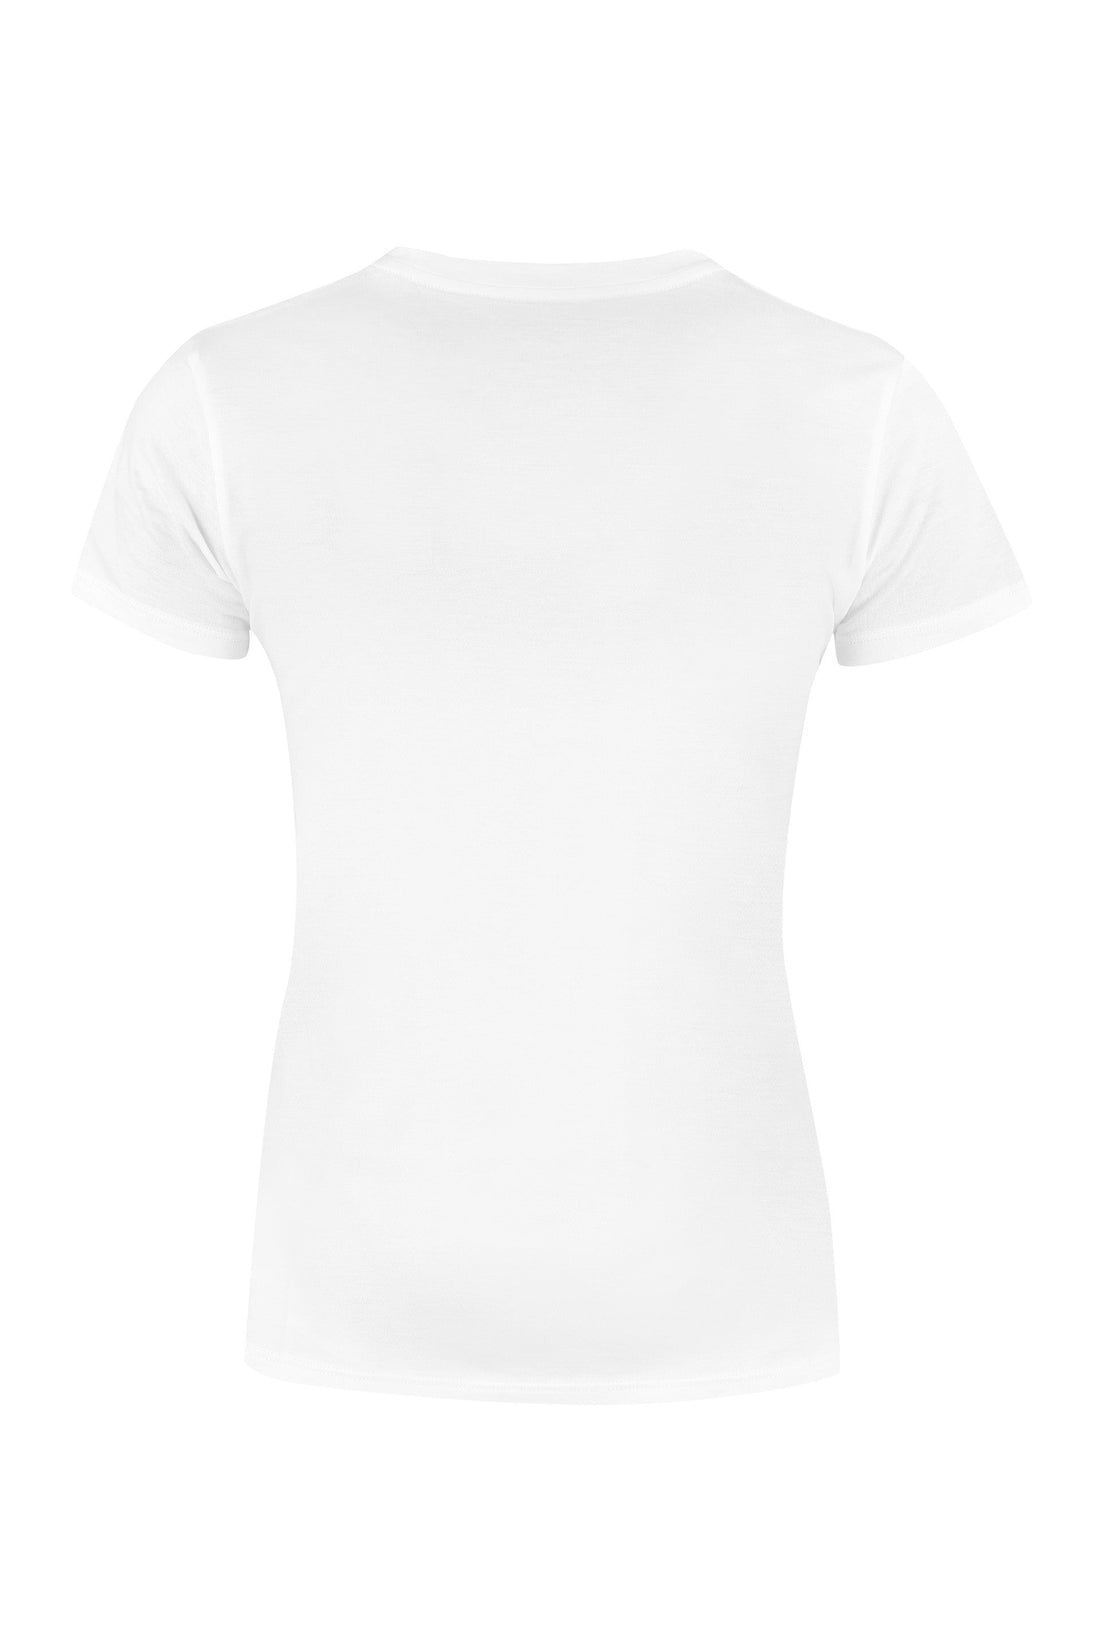 Vince-OUTLET-SALE-Cotton T-shirt-ARCHIVIST